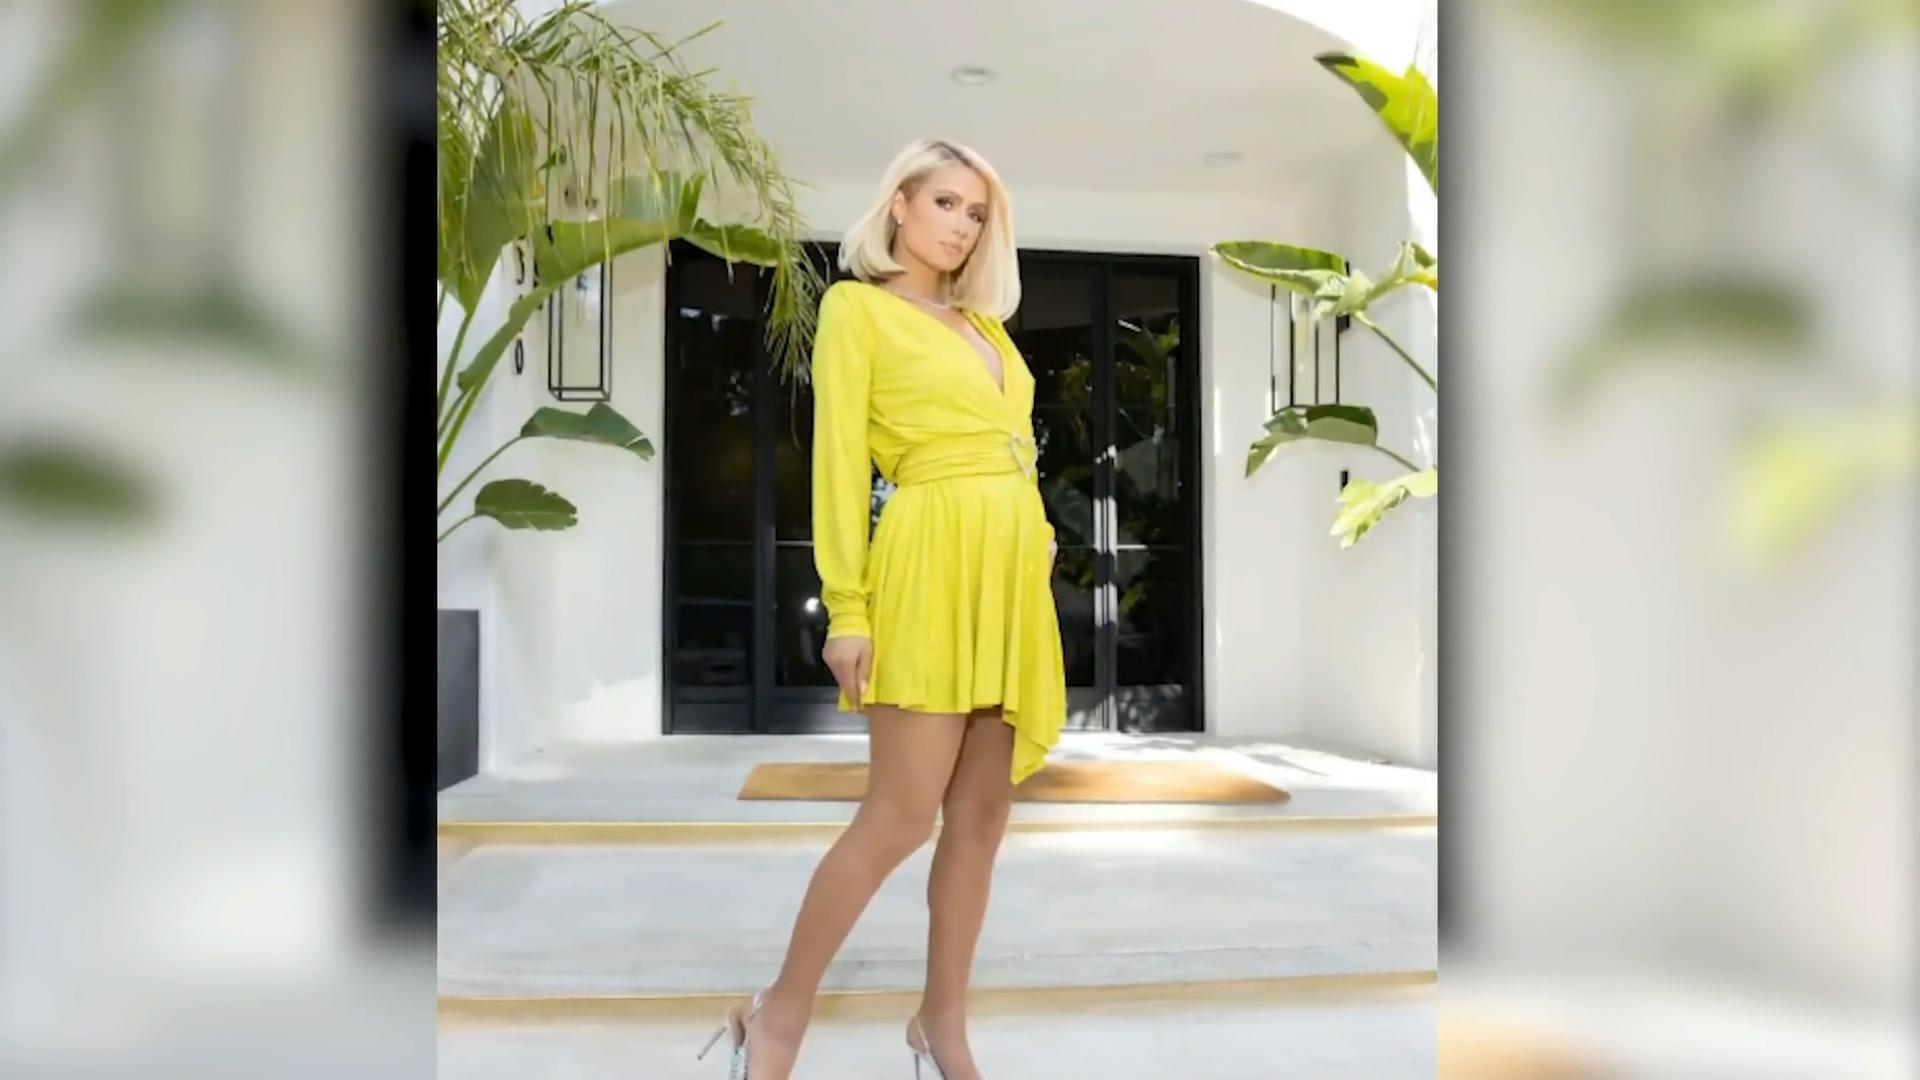 Ist Paris Hilton schwanger? Instagram-Bild sorgt für Spekulationen